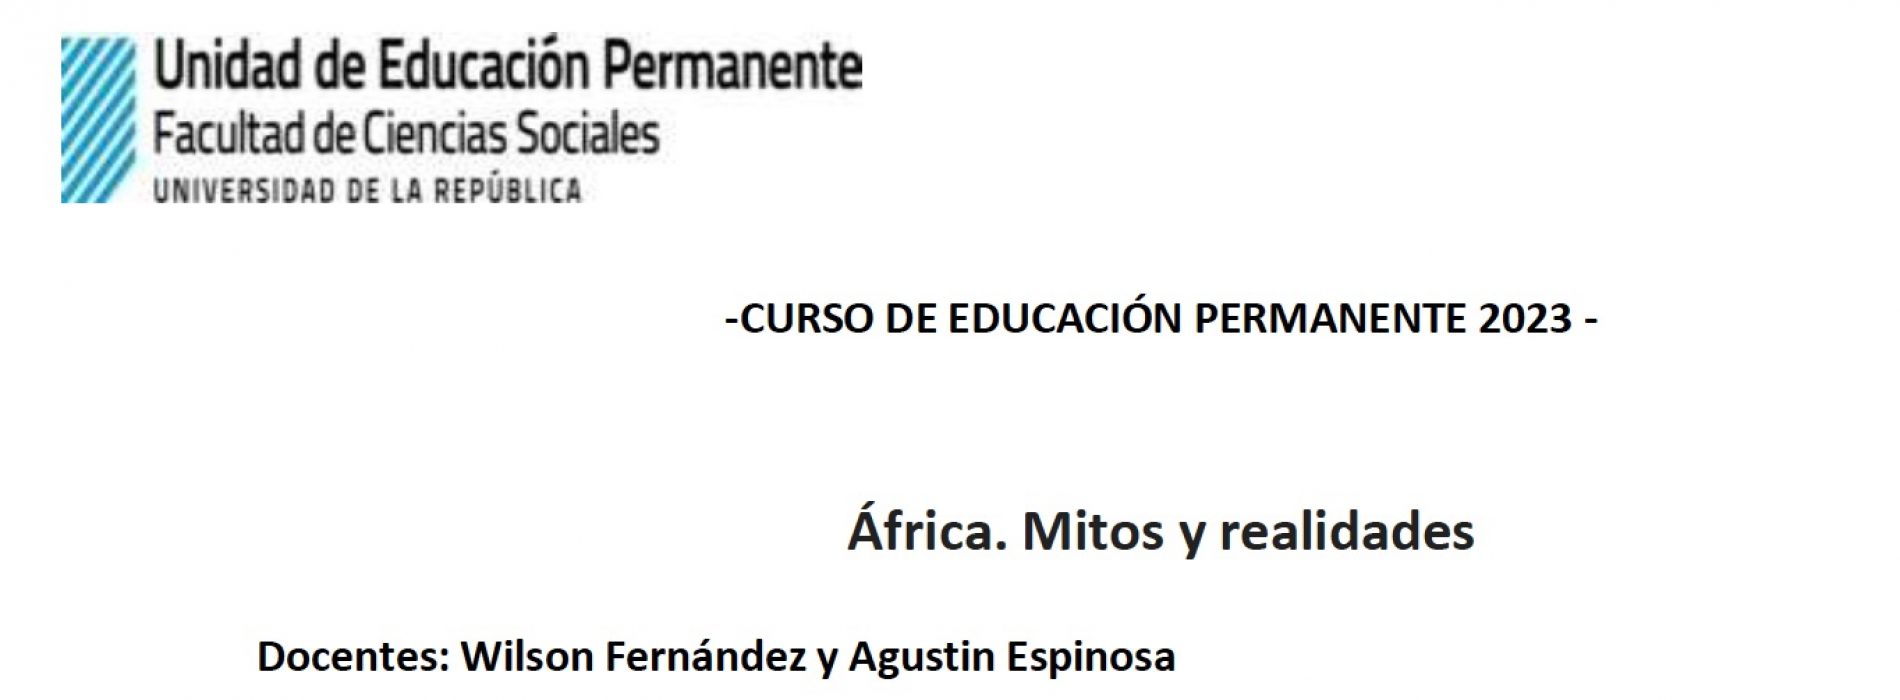 África. Mitos y realidades – Curso de Educación Permanente 2023 – UDELAR